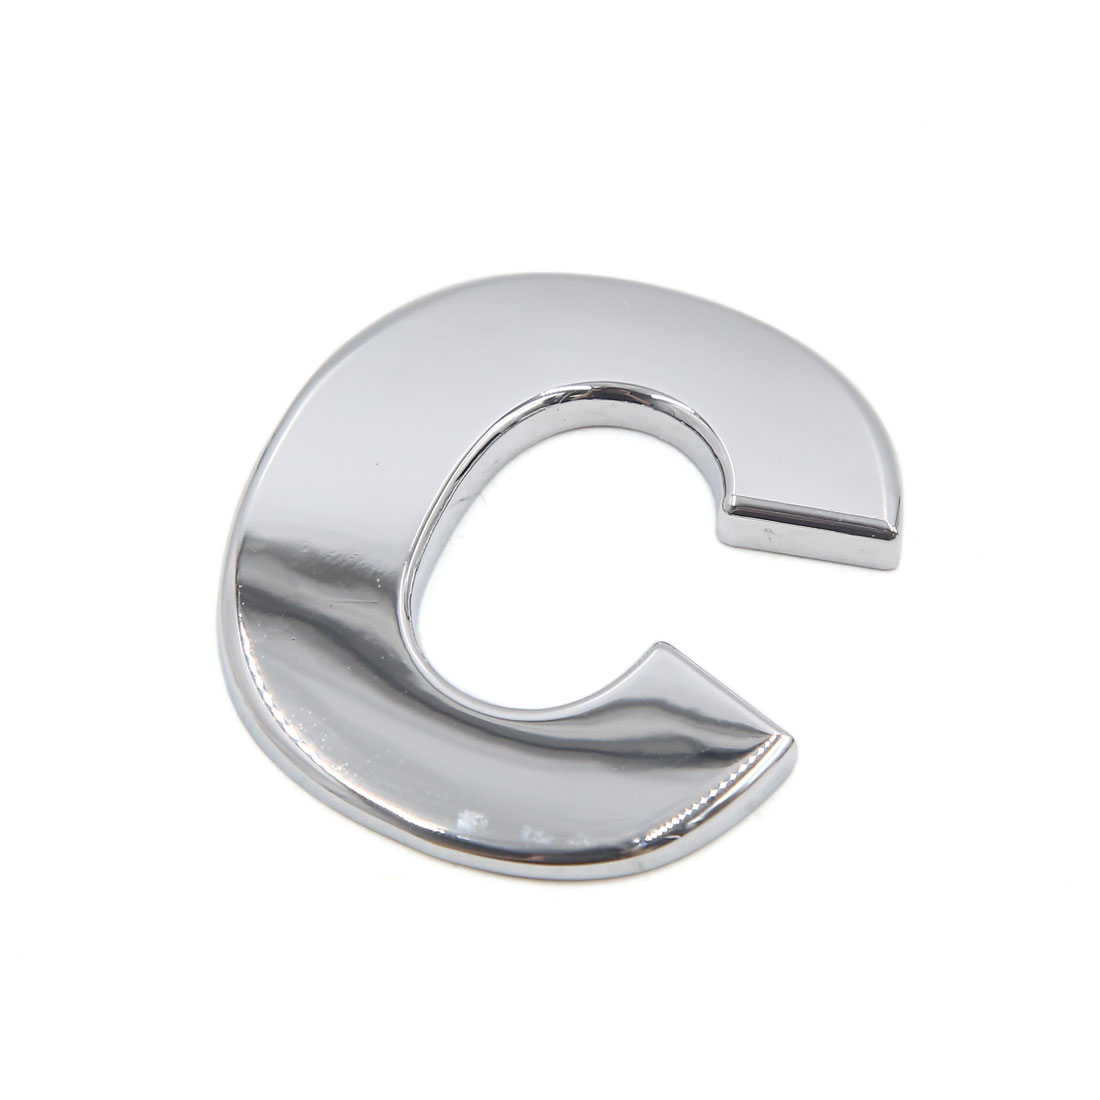 Unique Bargains Silver Tone Metal C Letter Shaped Alphabet Sticker Emblem Badge Decals for Car